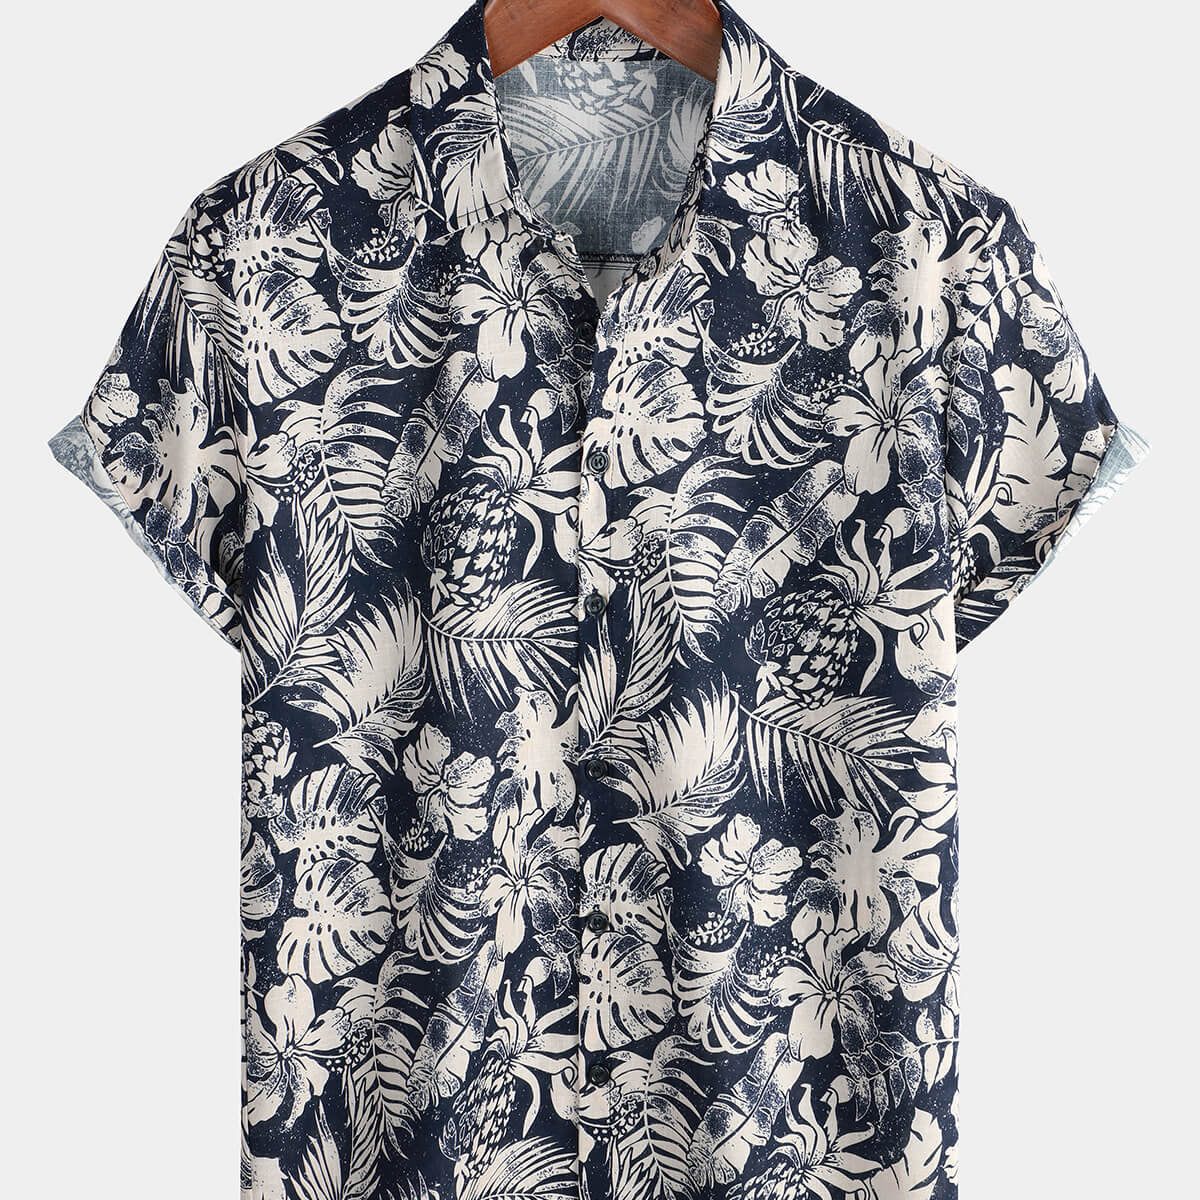 Men's Hawaiian Floral Button Up Holiday Summer Beach Button Up Shirt